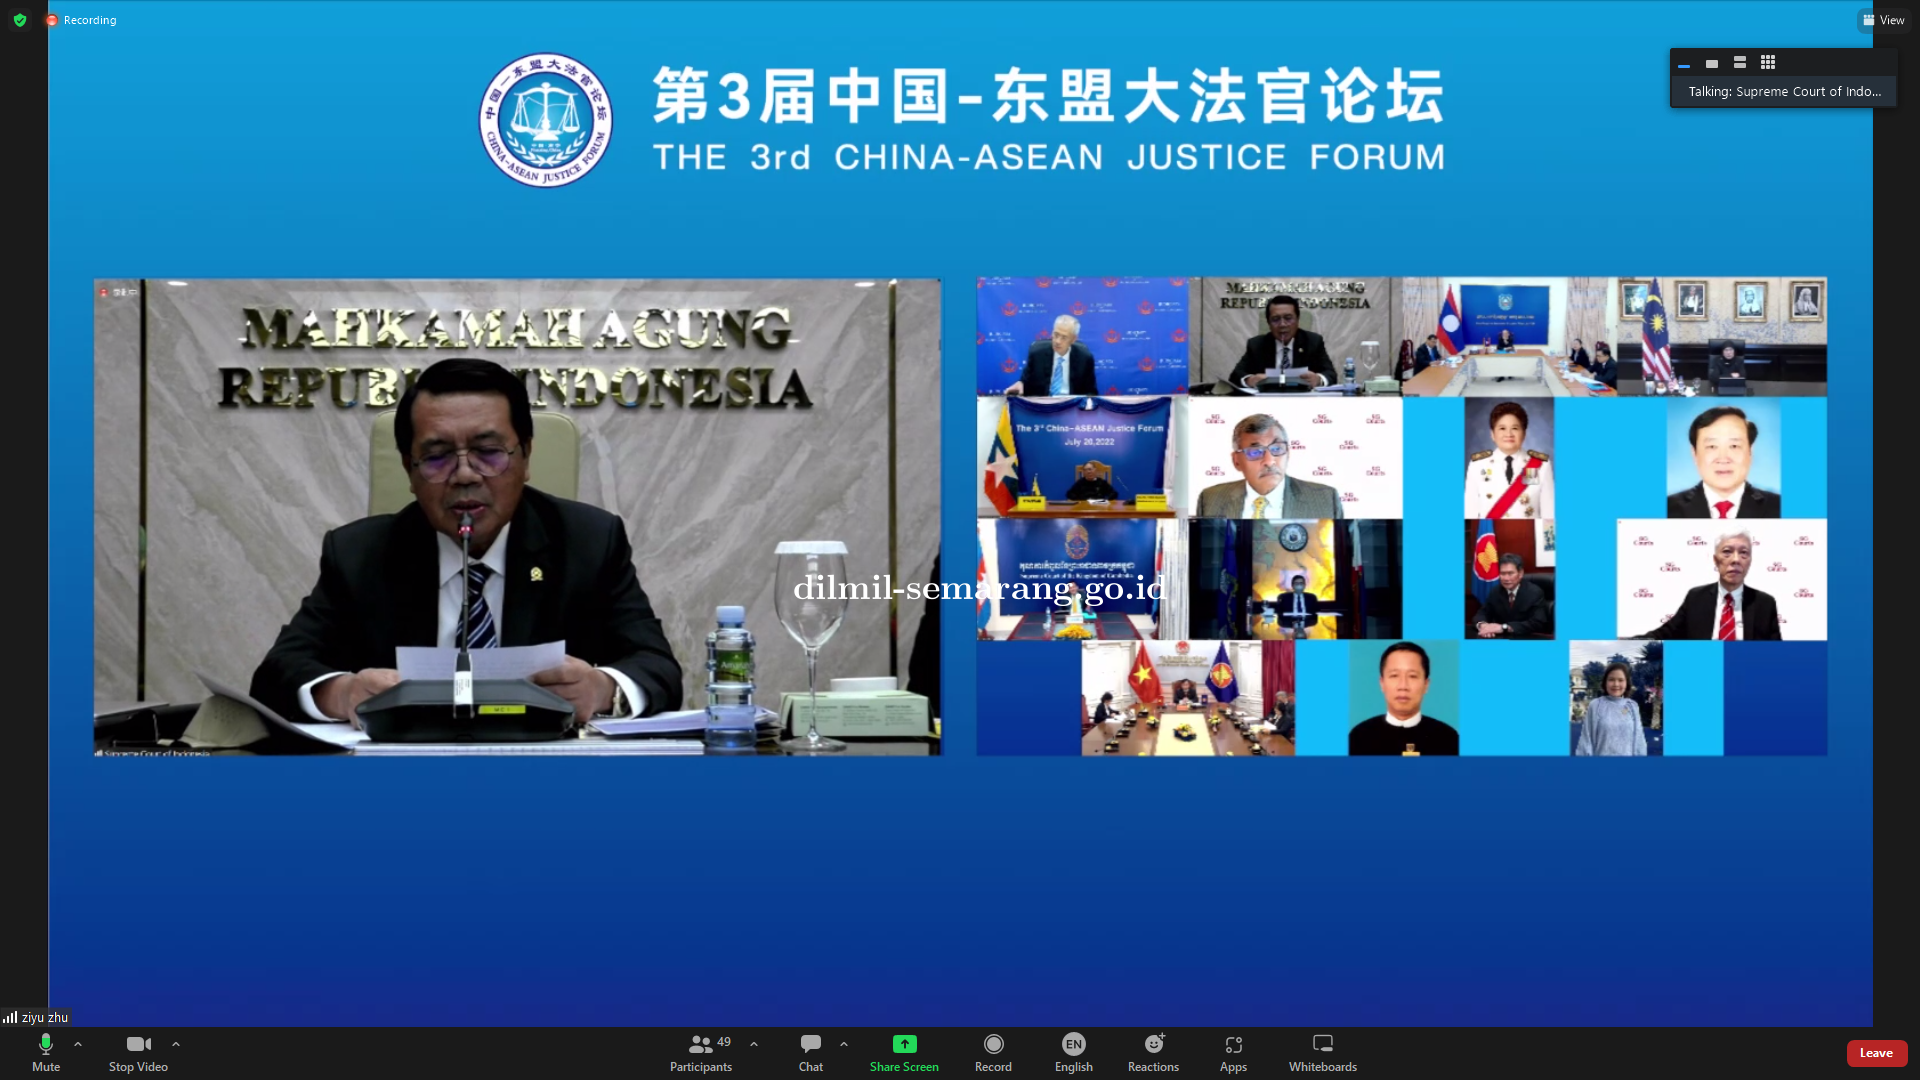 MAHKAMAH AGUNG RI MENGHADIRI CHINA - ASEAN JUSTICE FORUM KE 3